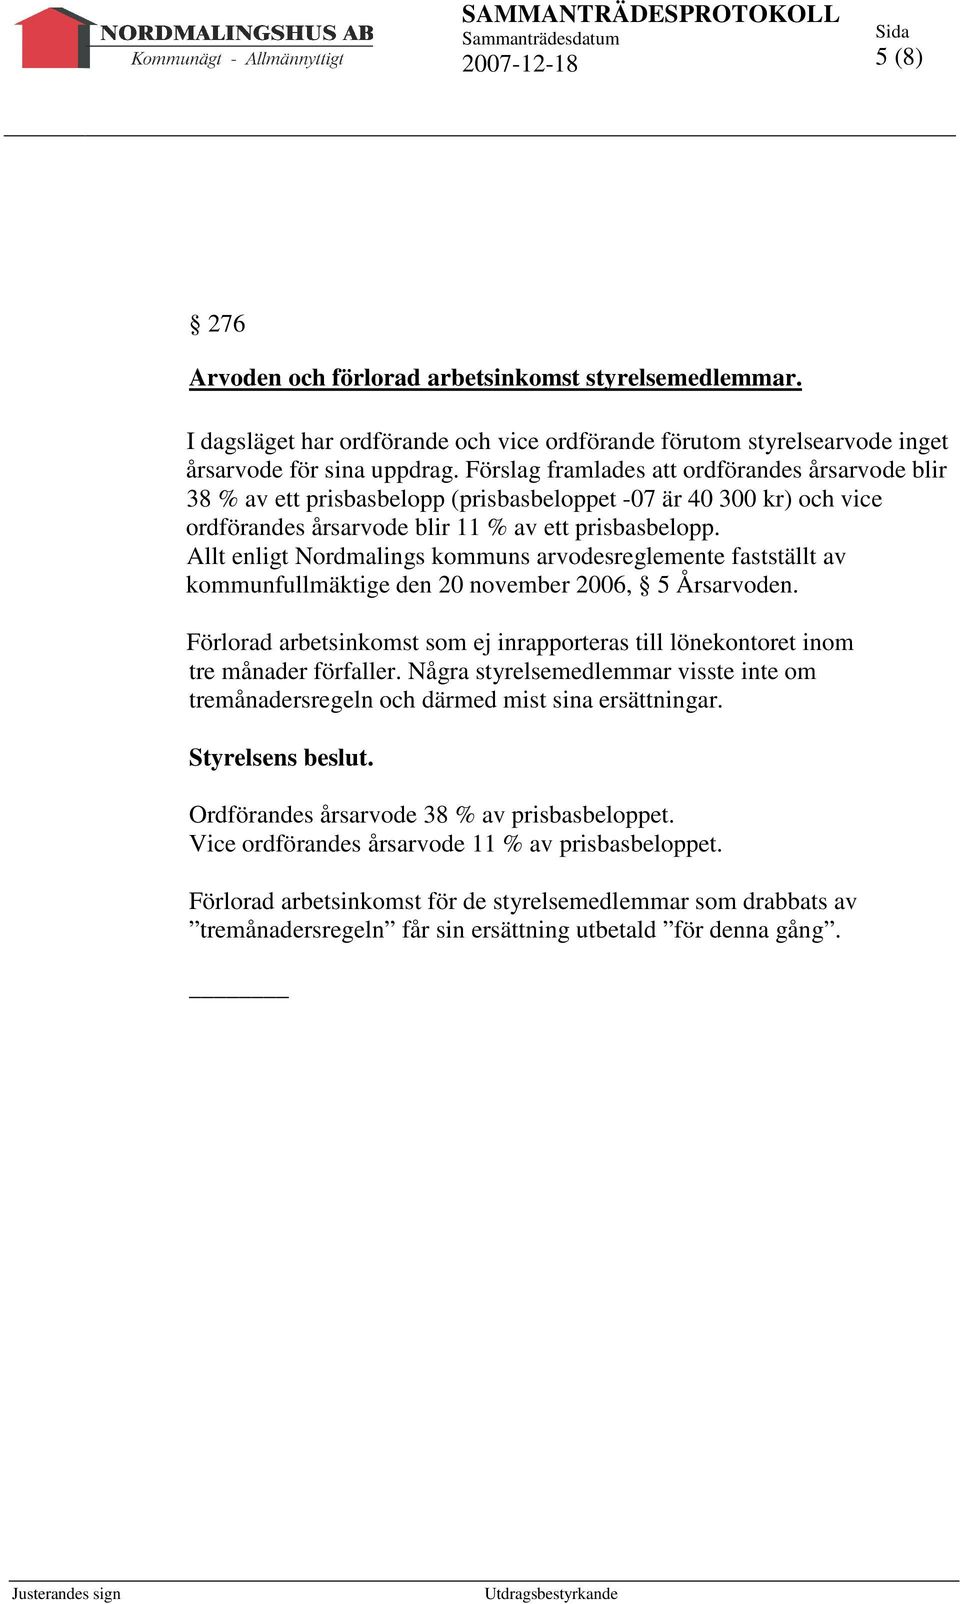 Allt enligt Nordmalings kommuns arvodesreglemente fastställt av kommunfullmäktige den 20 november 2006, 5 Årsarvoden.